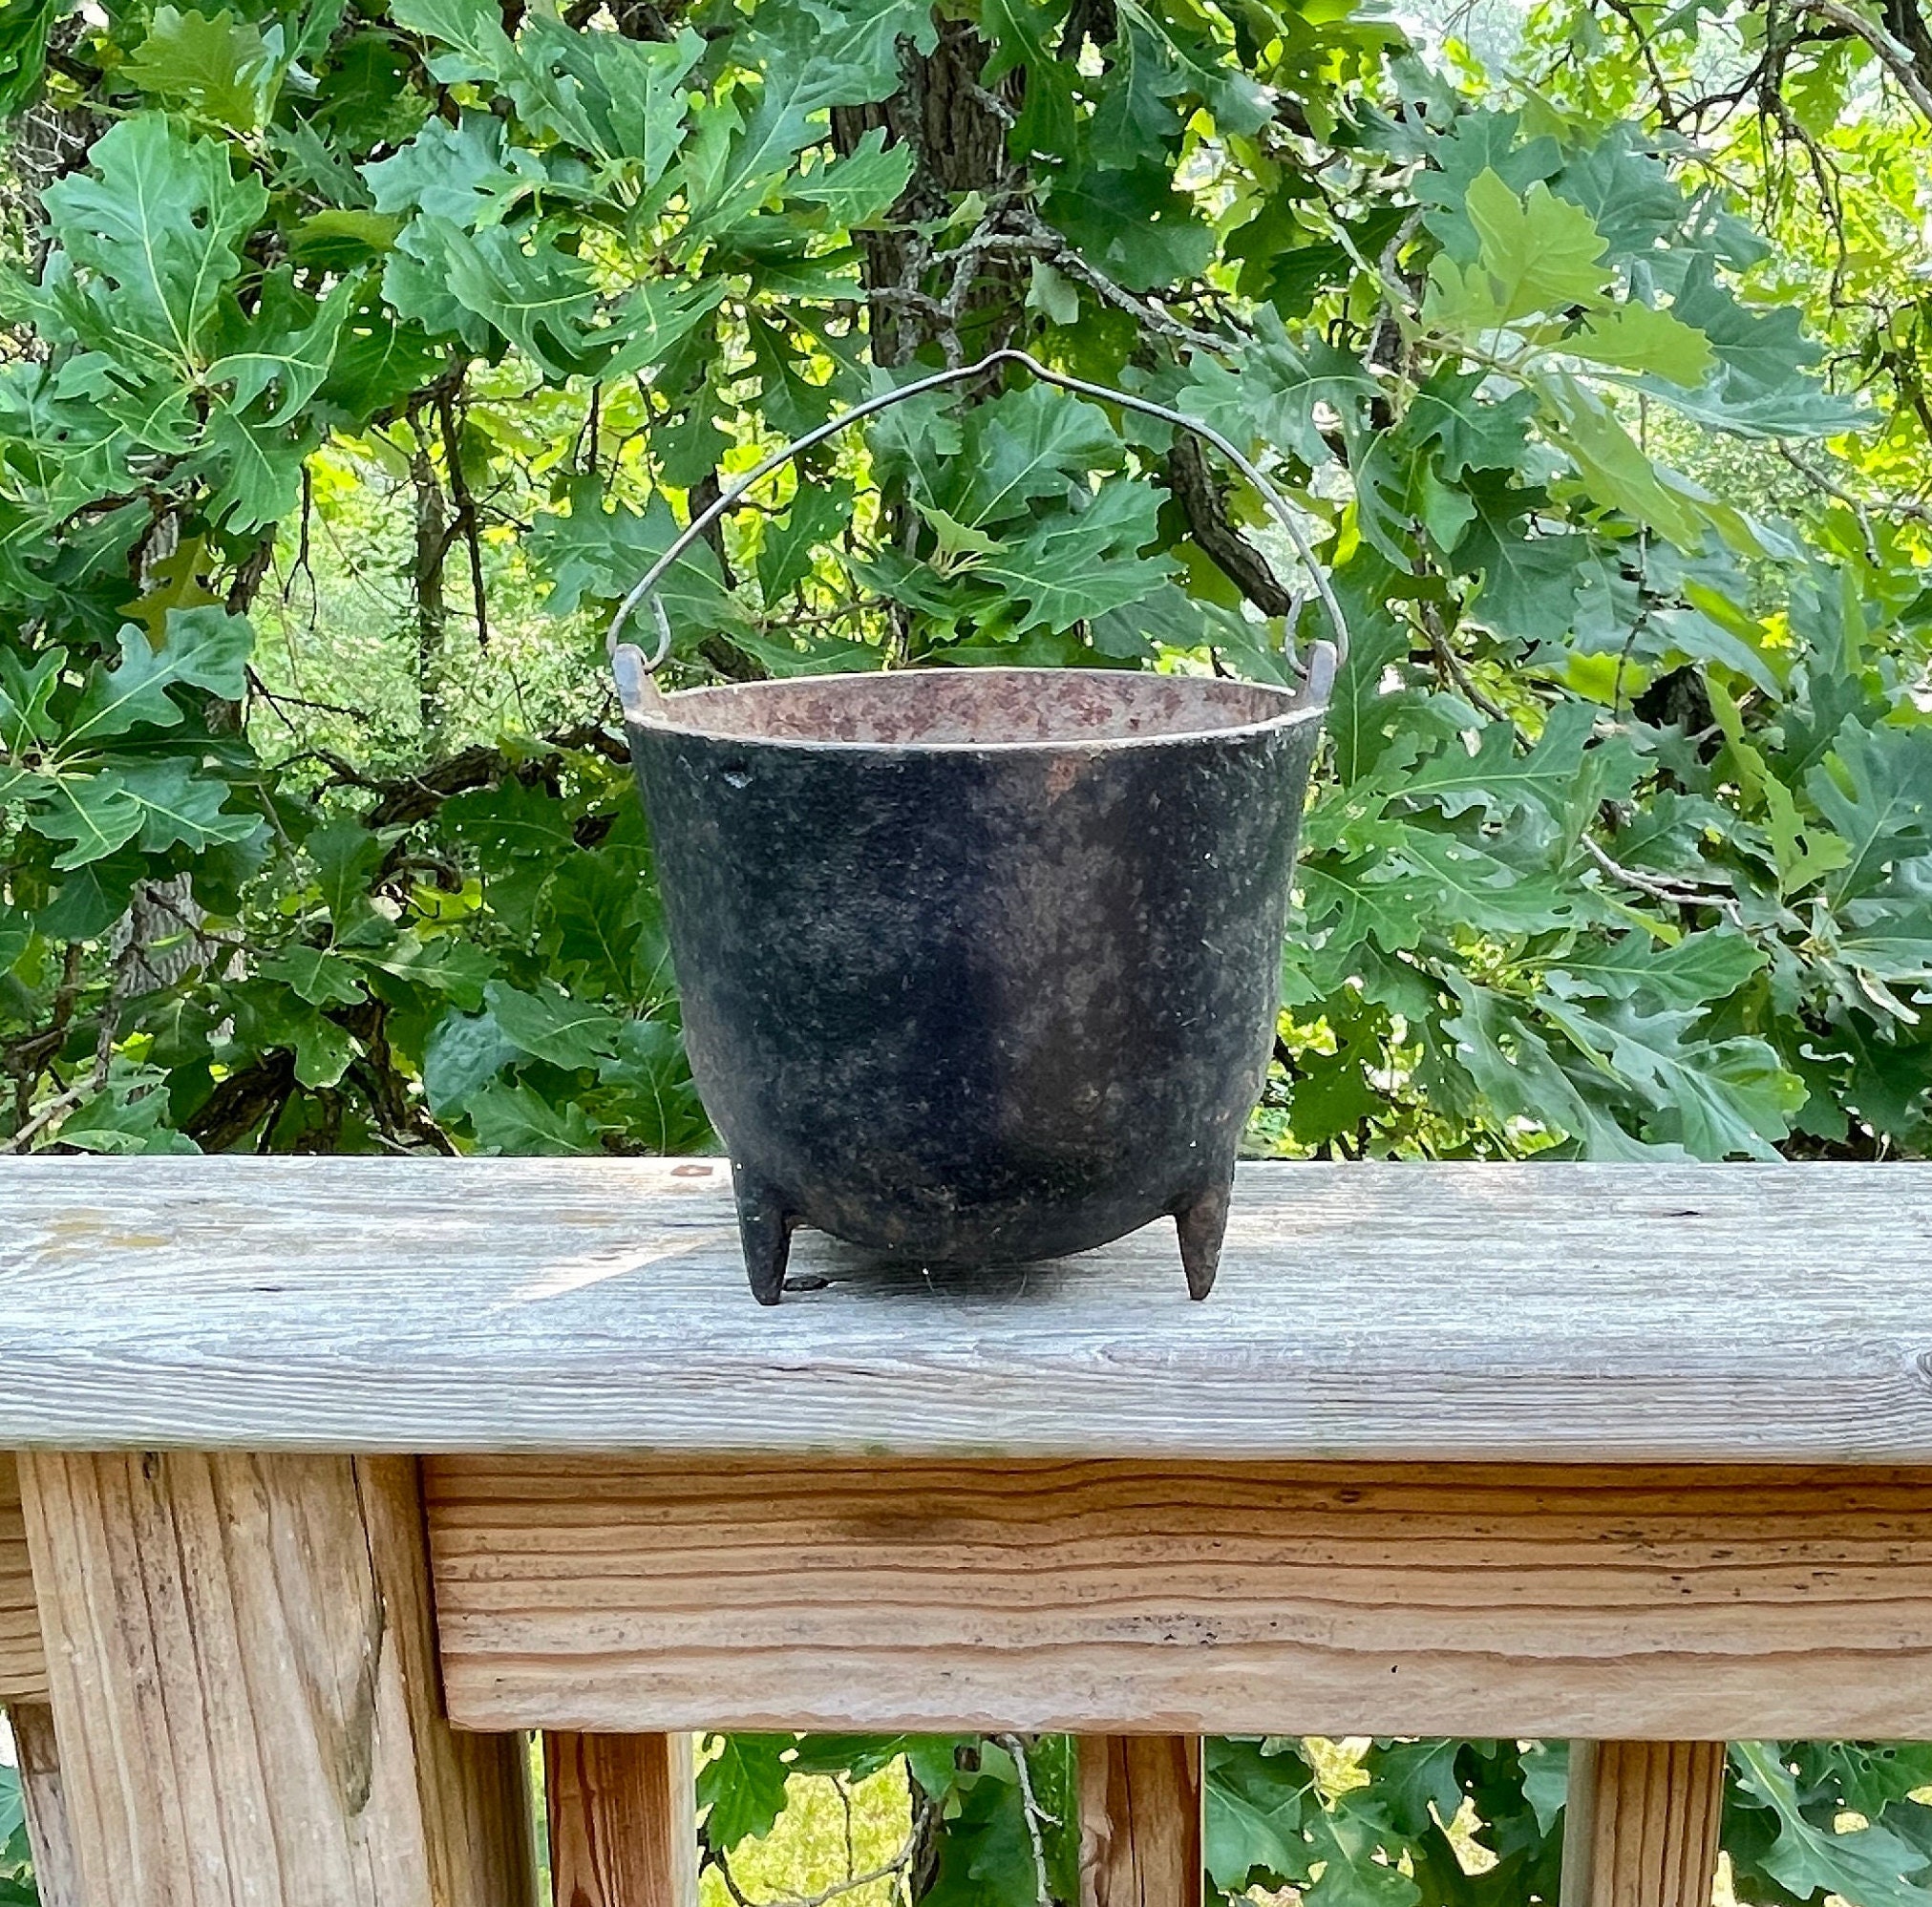 Vintage Small Cast Iron 3 Leg Kettle, Bean Pot, Gypsy Pot